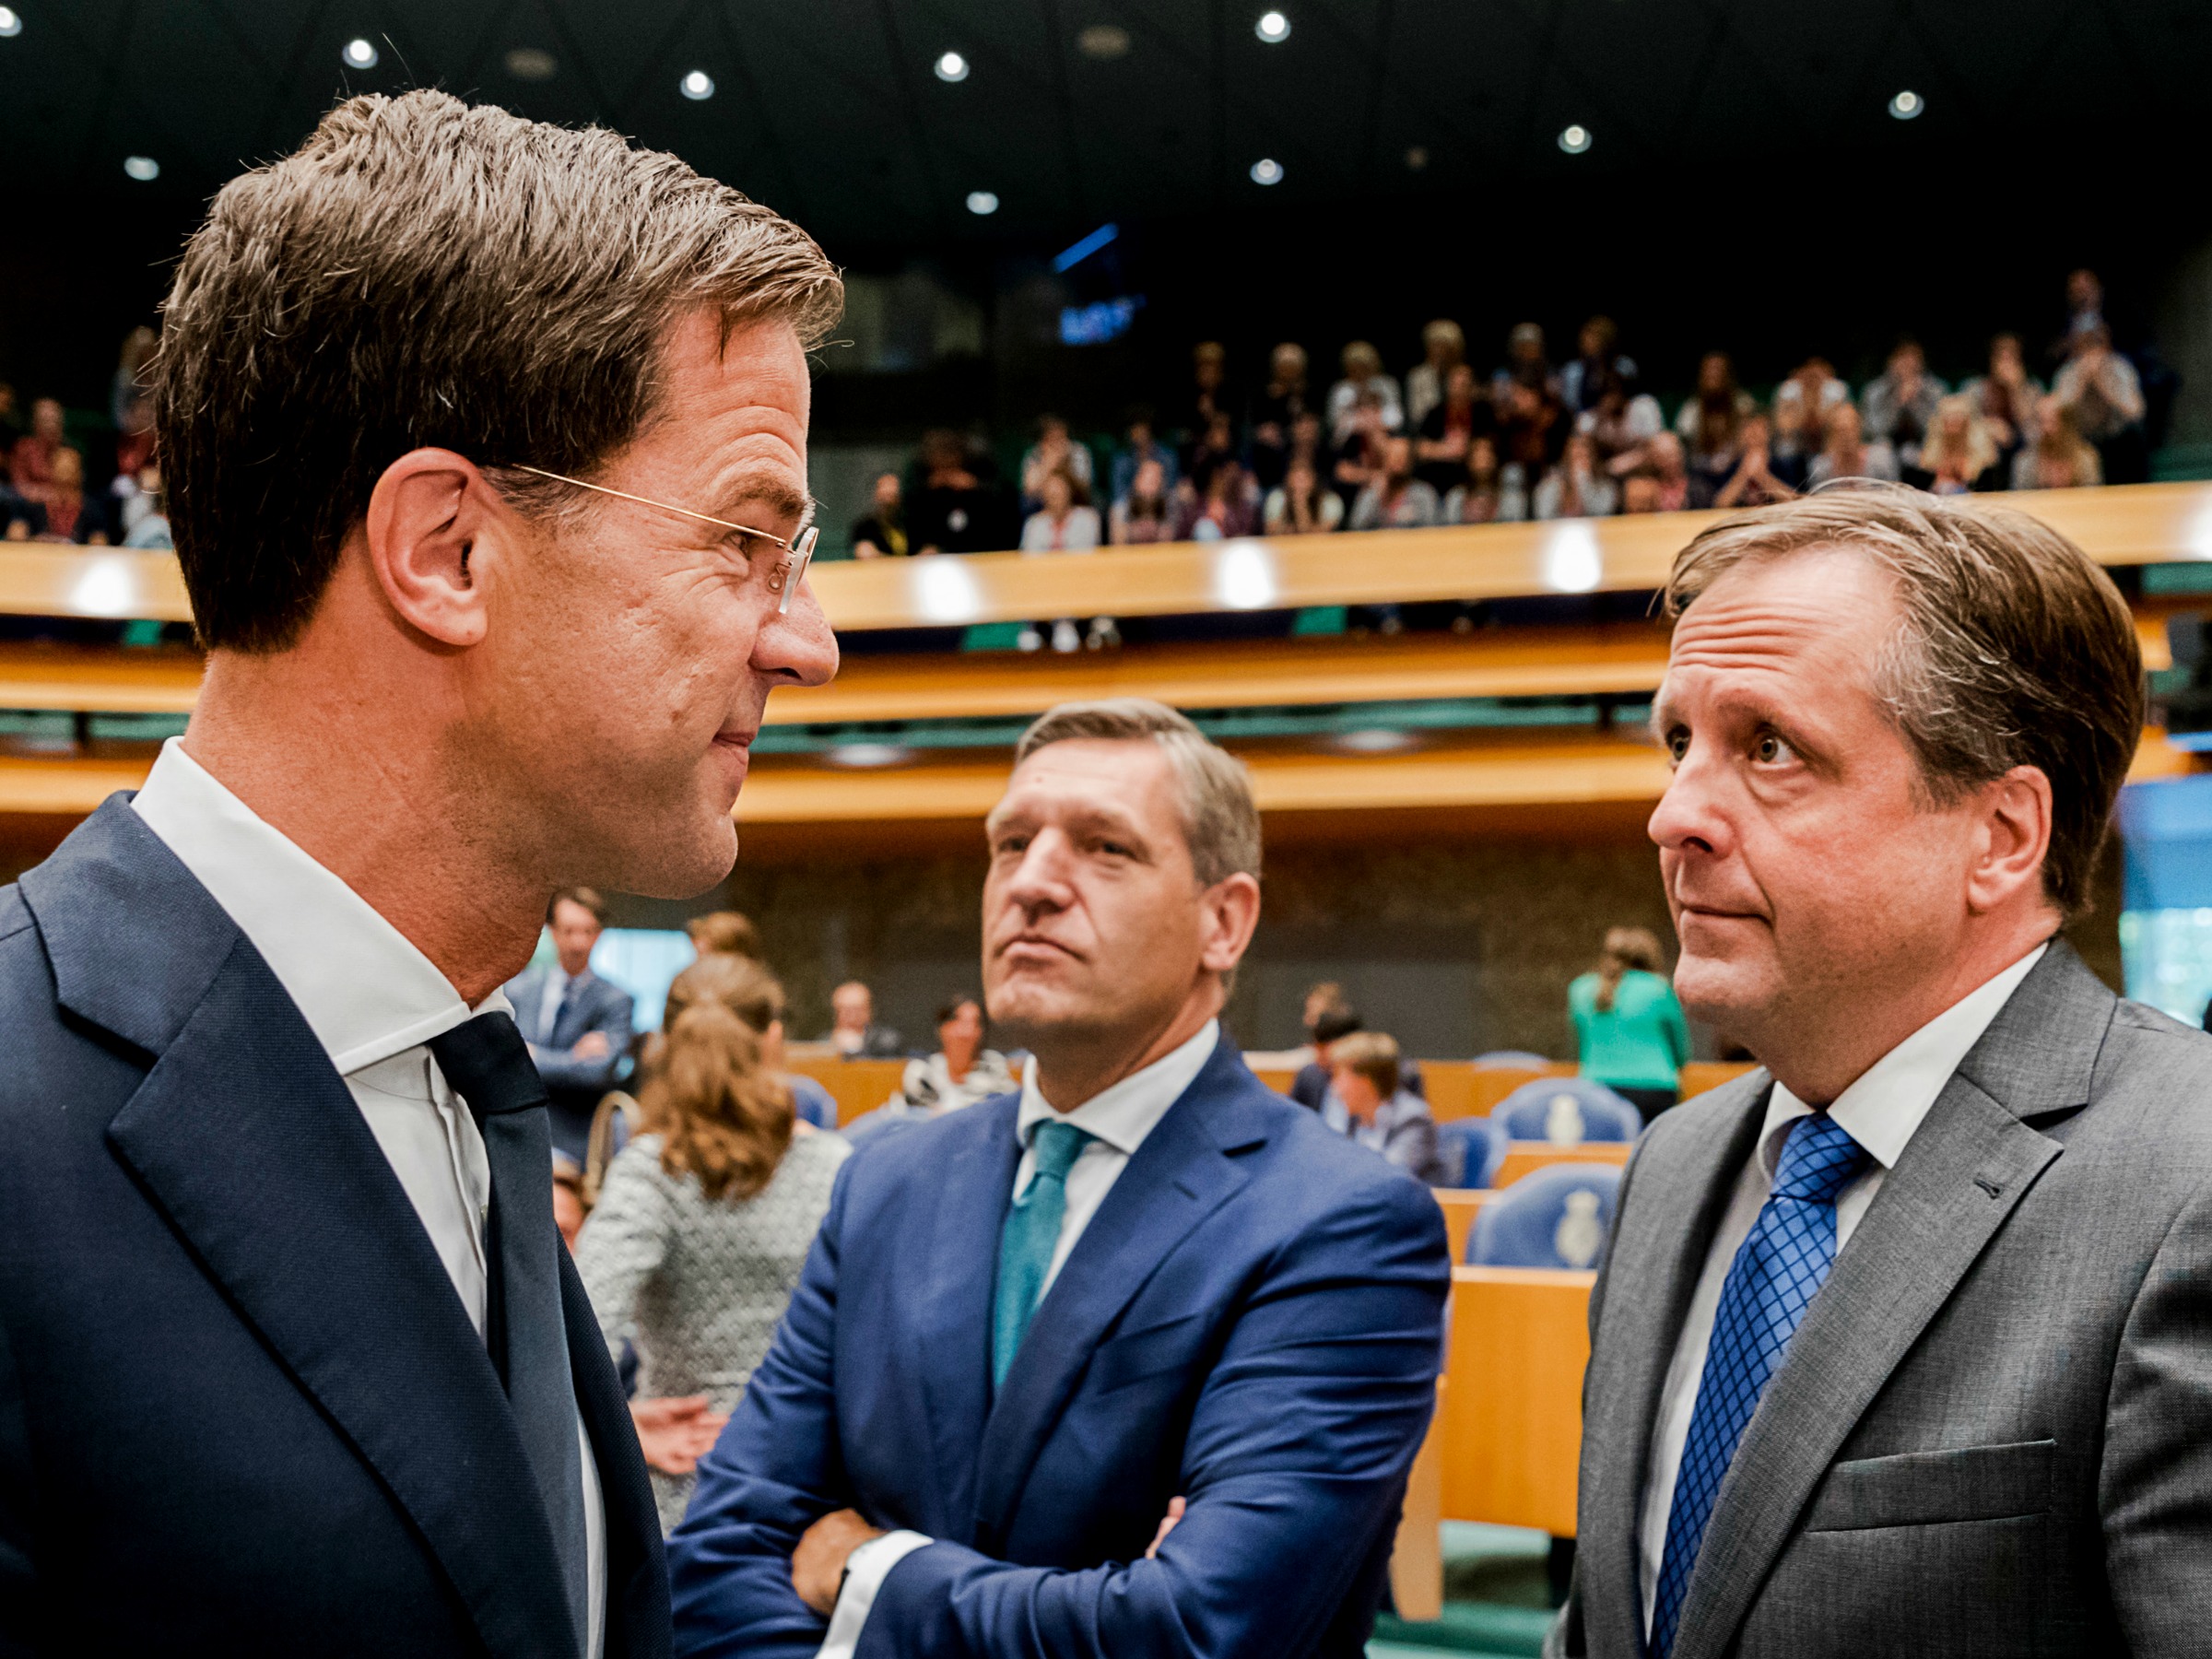 verkiezingen 2017, coalitie, VVD, PVV, Mark Rutte, Geert Wilders